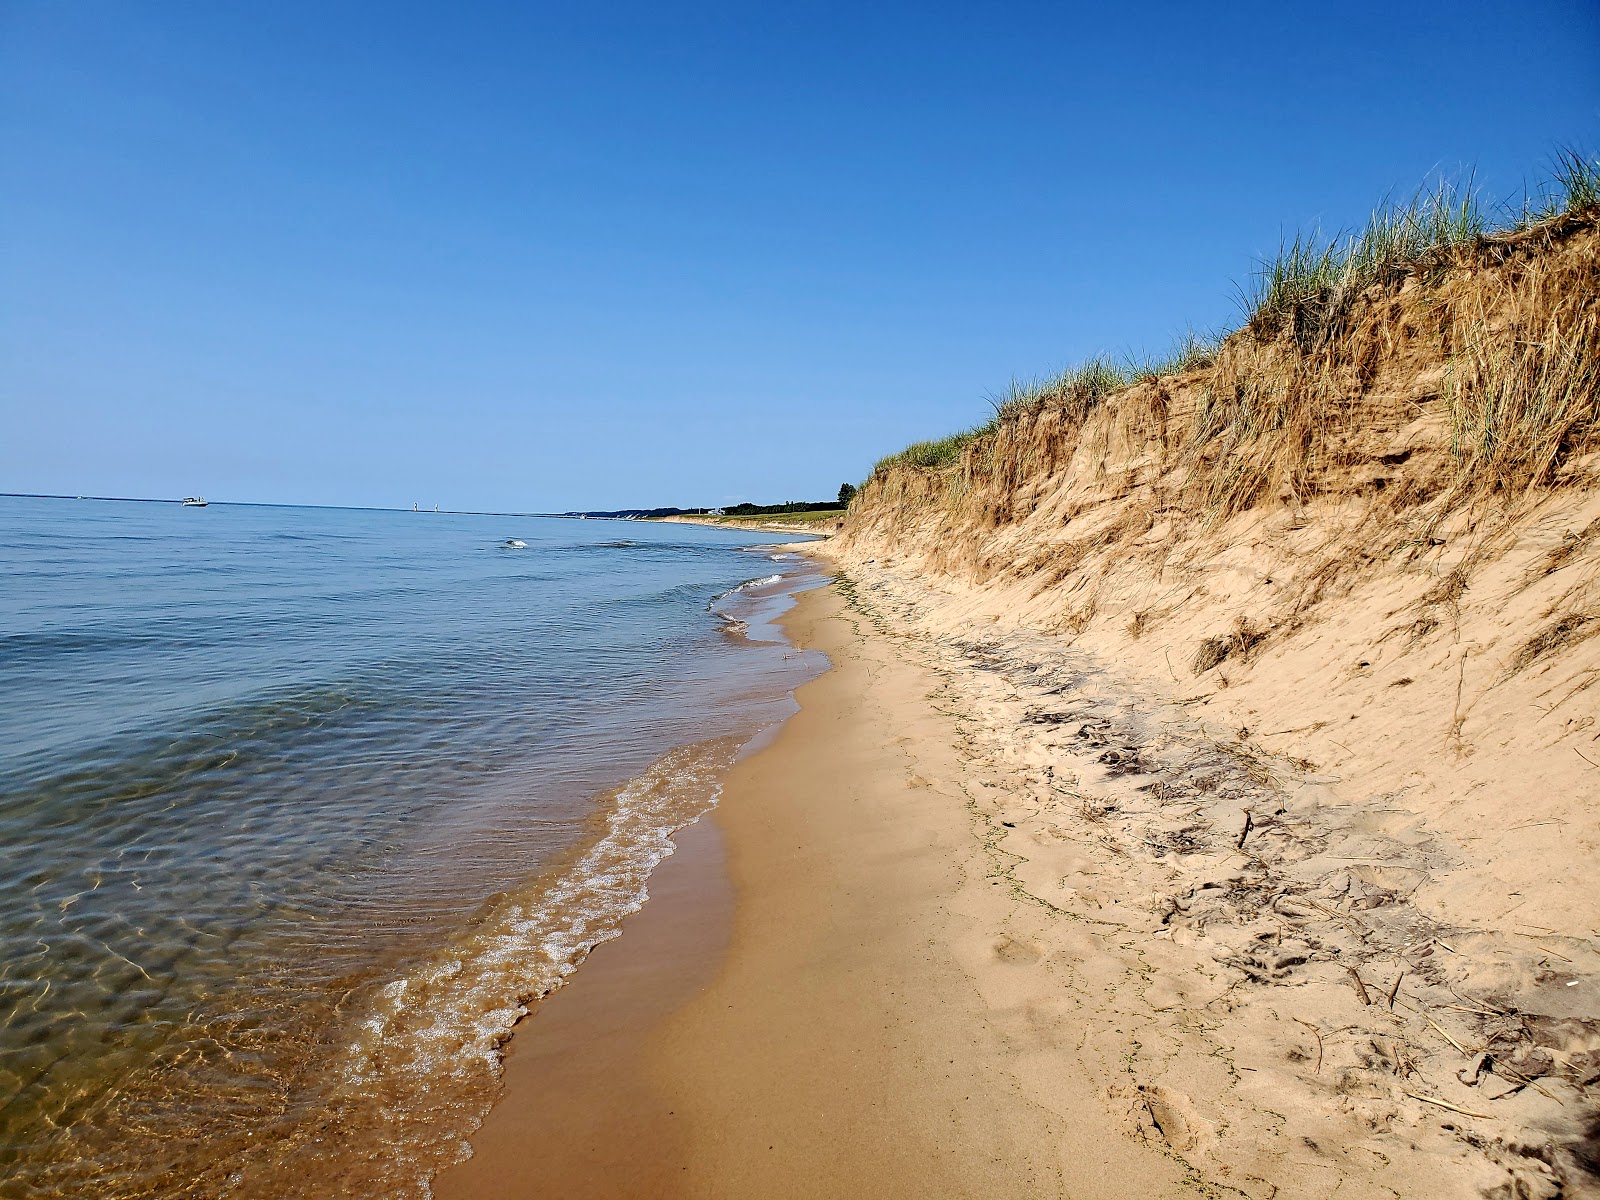 Fotografie cu Oval Beach - locul popular printre cunoscătorii de relaxare